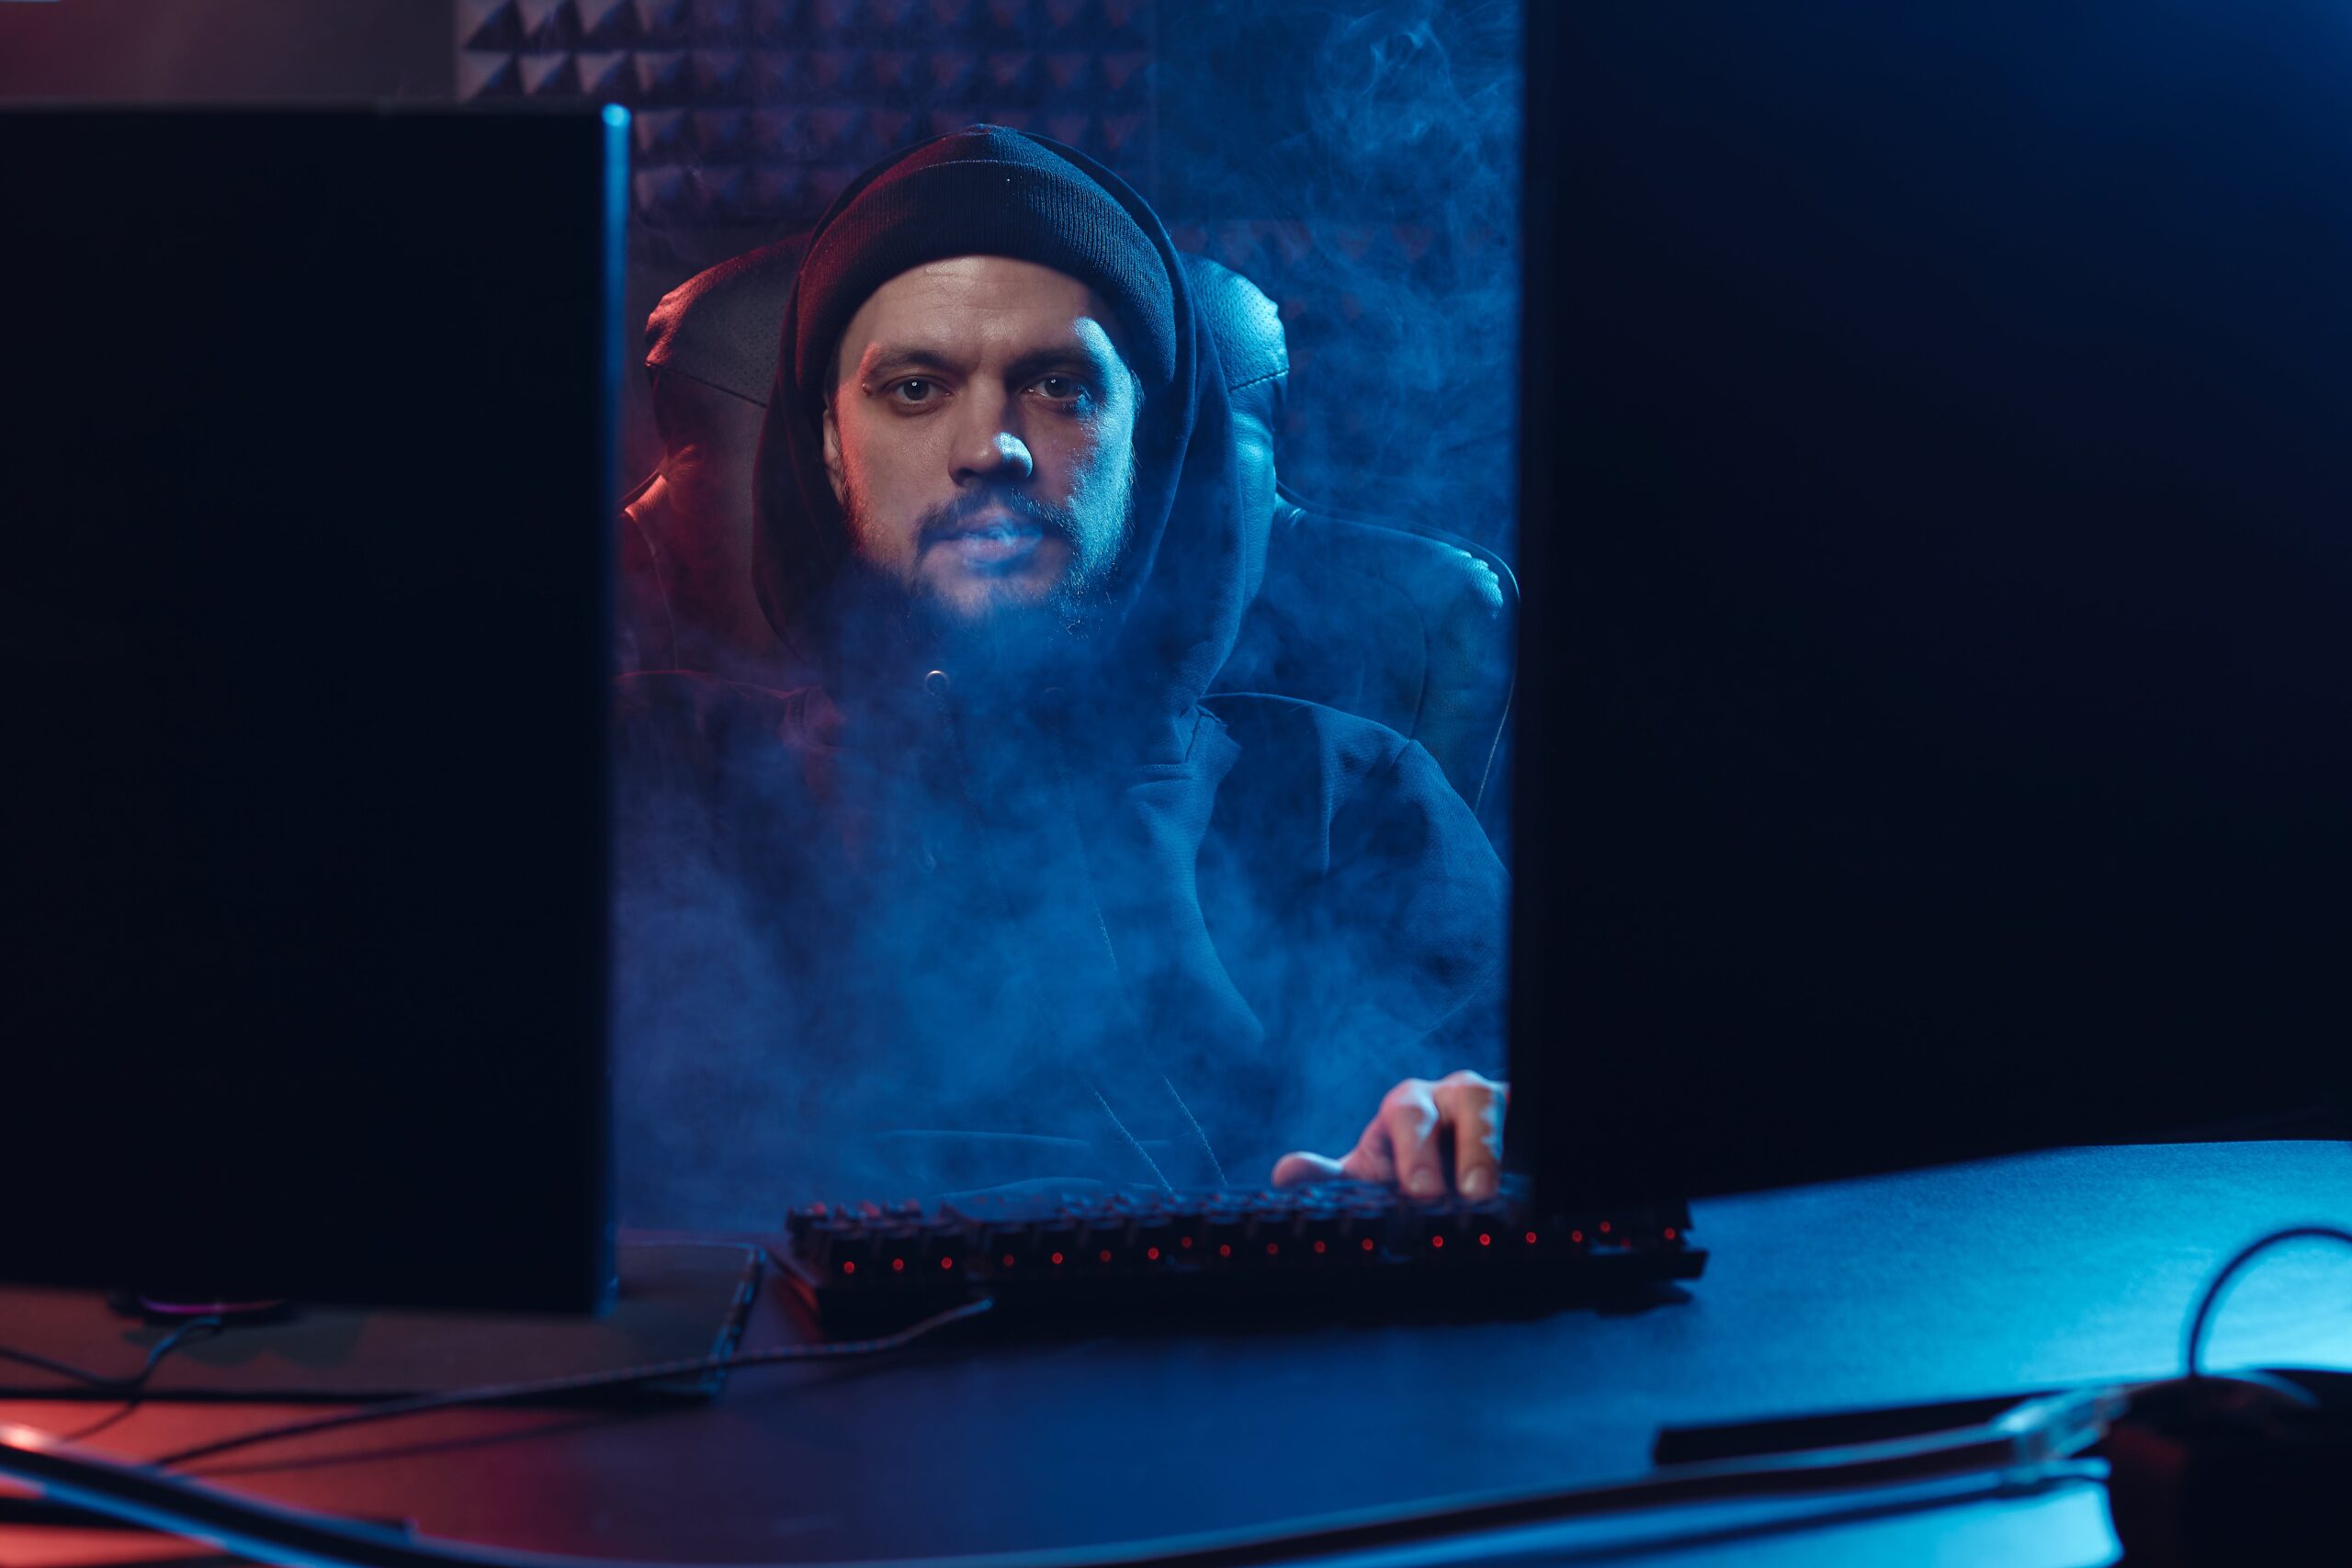 Mężczyzna w czapce siedzi przed komputerem w zaciemnionym pokoju, oświetlenie podkreśla dym unoszący się wokół niego.